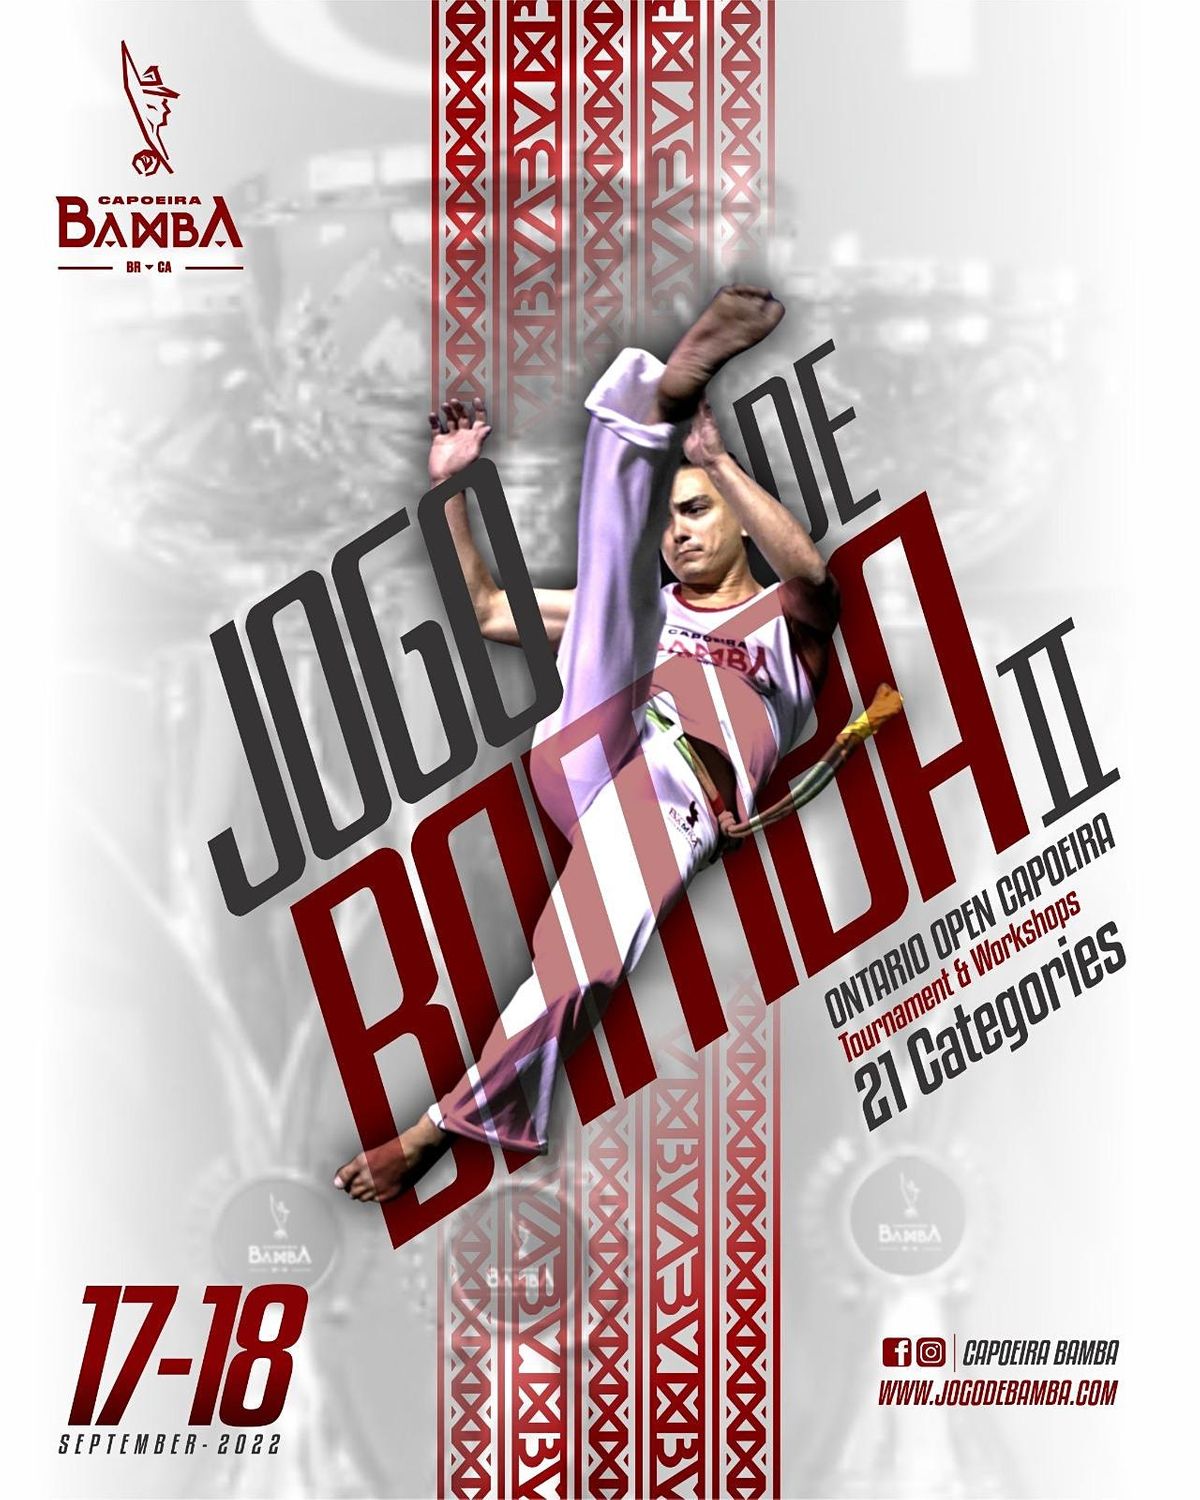 Jogo De Bamba II - Ontario Open Capoeira Tournament & Workshops